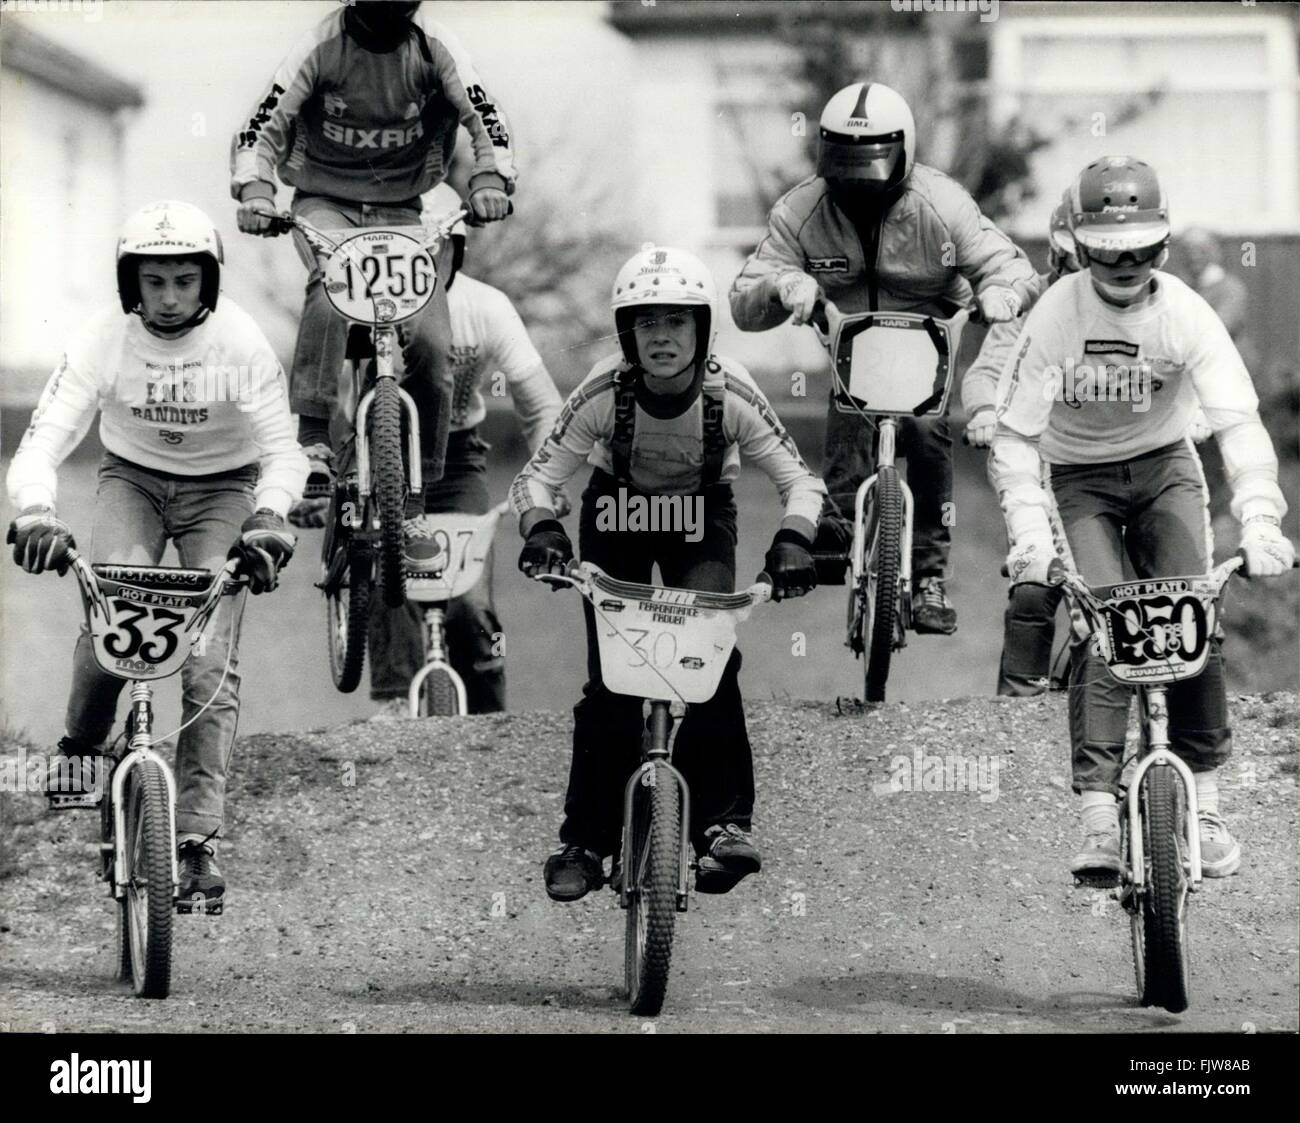 1985 - Su leruote delle meraviglie: l'ultima mania per andare in bicicletta in Gran Bretagna, ha poco a che fare con il mantenere montare o evitando le spese di esecuzione di un'auto. La sua fatto per la pura emozione della corsa. I lod tra e 18 anni si radunano per prendere parte in Gran Bretagna è in più rapida crescita dello sport motocross biciclette BMX o per brevi. I ragazzi ride appositamente realizzati con le moto heavy - duty pneumatici che sono ideali per accidentato-piste per lo sci di fondo. Freestyle BMX è come la ginnastica su una bicicletta. L'Osa diavolo piloti girare indietro capriole, bunny luppolo, e l'incredibile impennare. Lo sport ha avuto origine in Califo Foto Stock